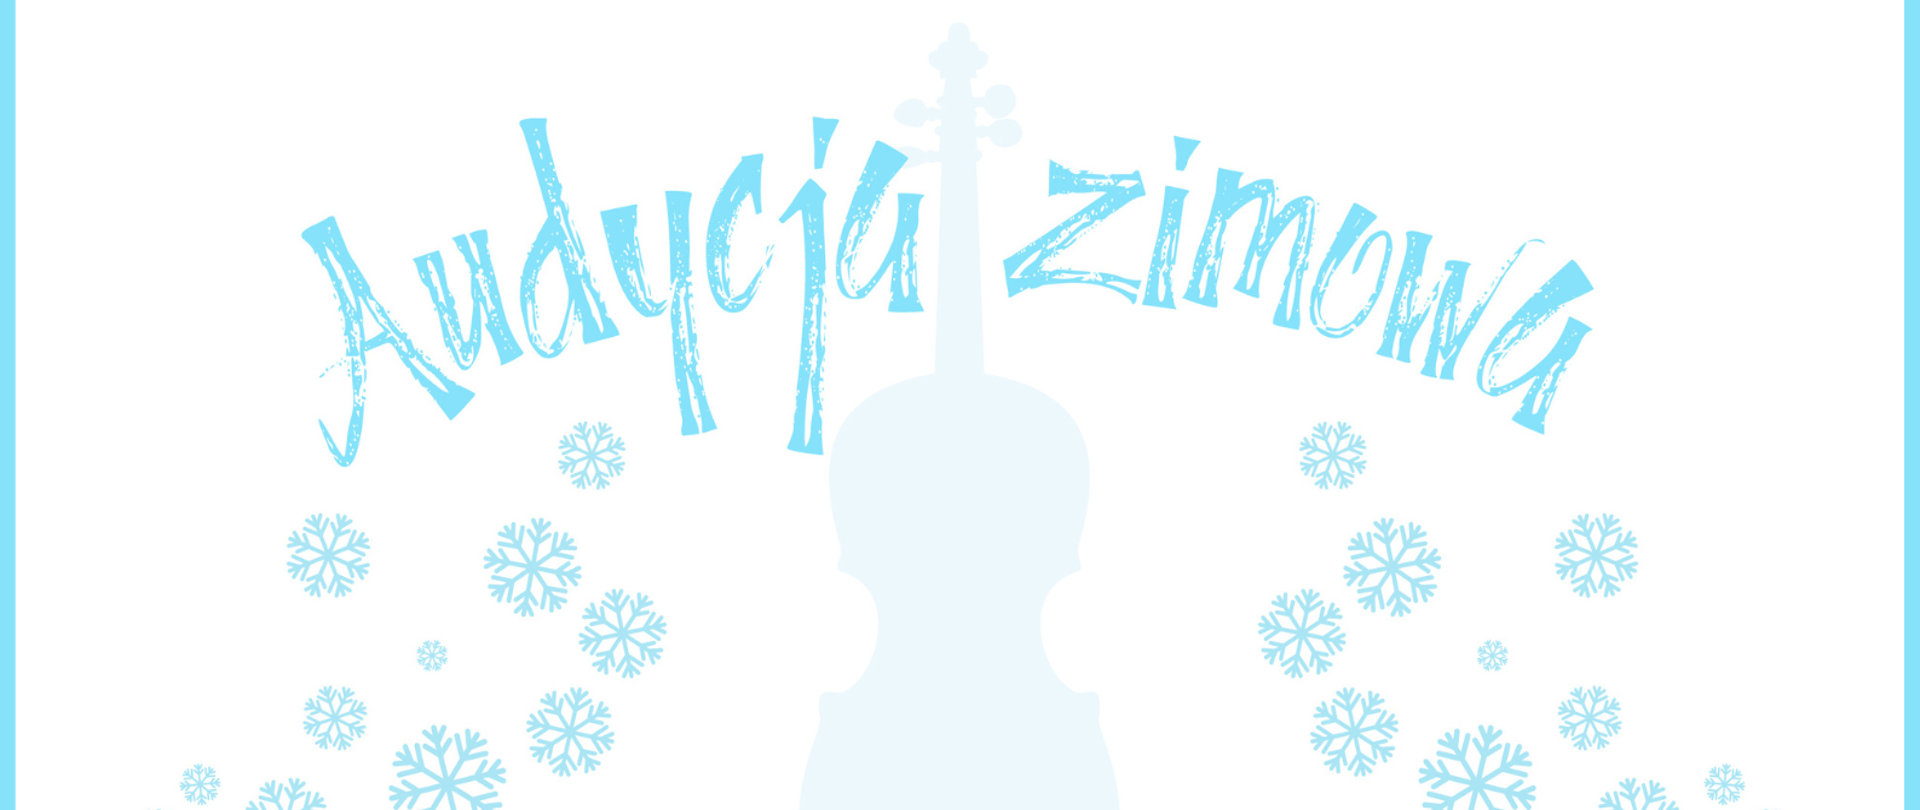 w górnej części grafika przedstawiająca niebieskie skrzypce, po obu stronach skrzypiec niebieskie gwiazdki śniegu, poniżej szczegółowe informacje dotyczące audycji, całość na białym tle